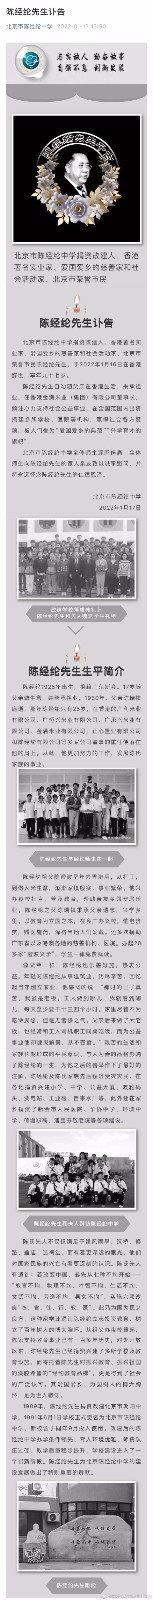 香港著名实业家陈经纶逝世 你那里有陈经纶学校吗